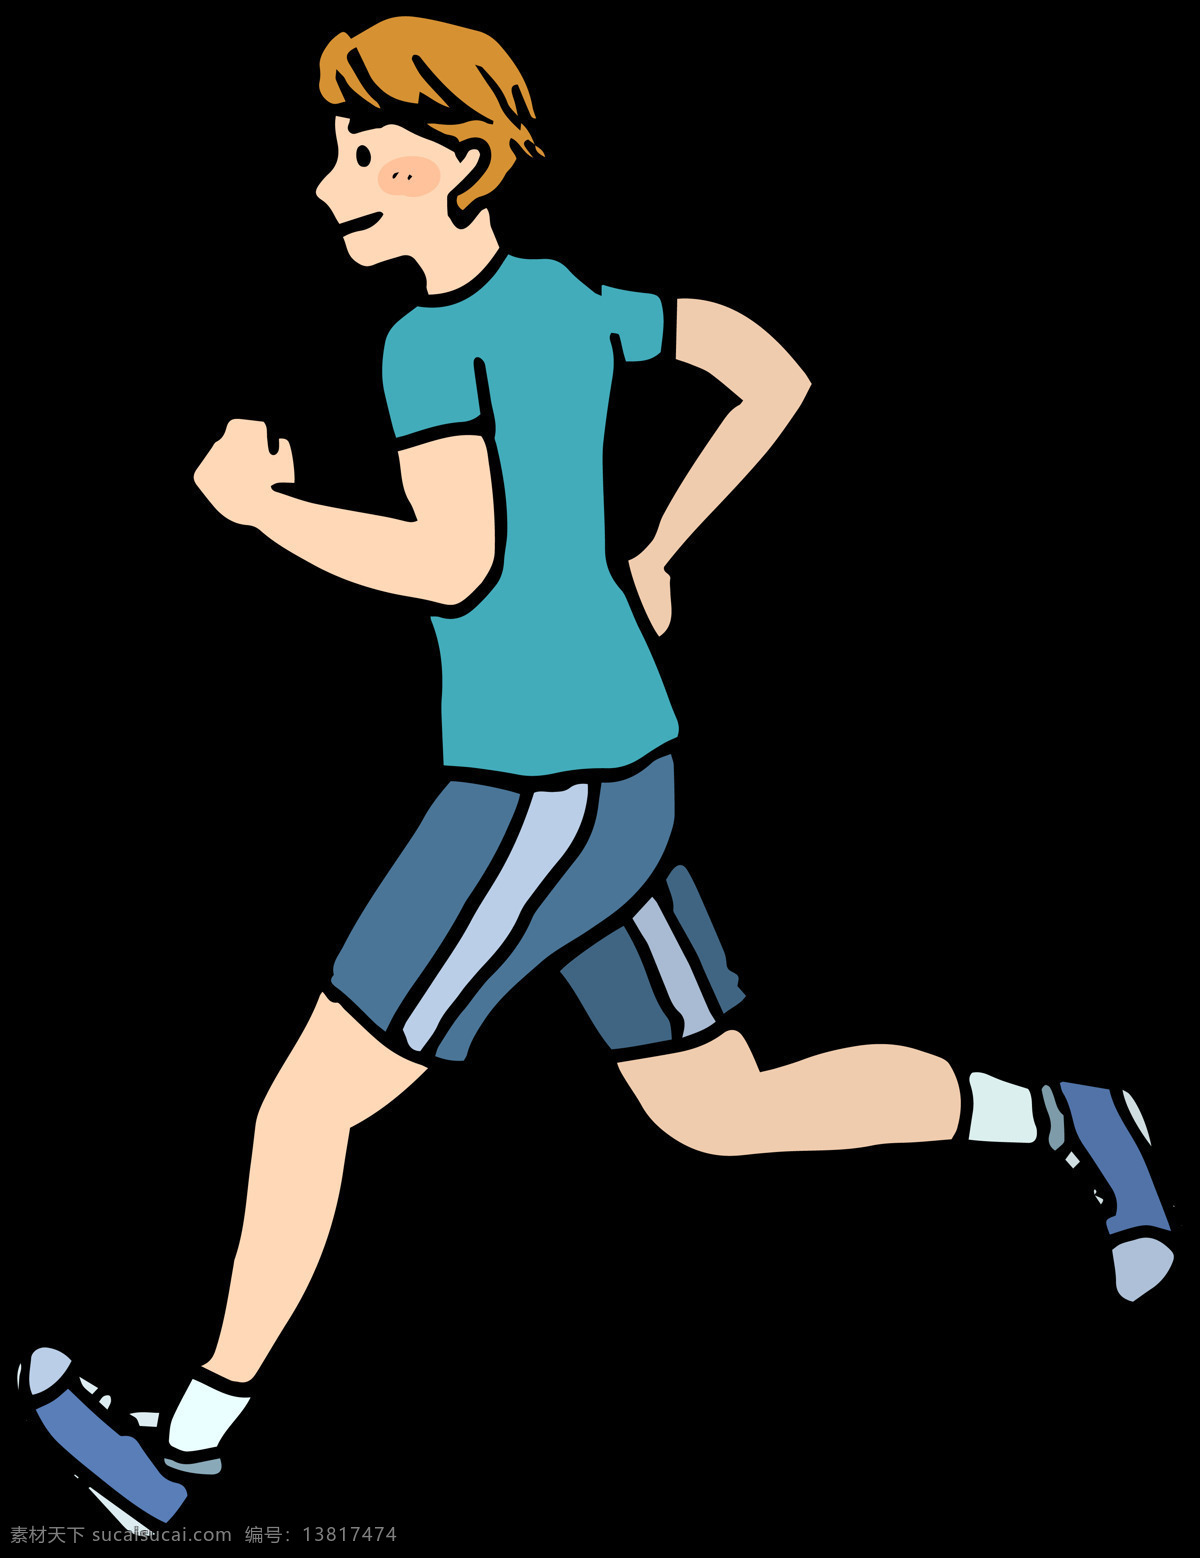 手绘 风格 跑步 免 抠 透明 图 层 卡通奔跑的人 运动会 励志 狂跑 起跑 狂欢人群 奔跑吧少年 体育素材 奔跑剪影 跑步的人 奔跑素材 运动人物 卡通运动 跑步人物